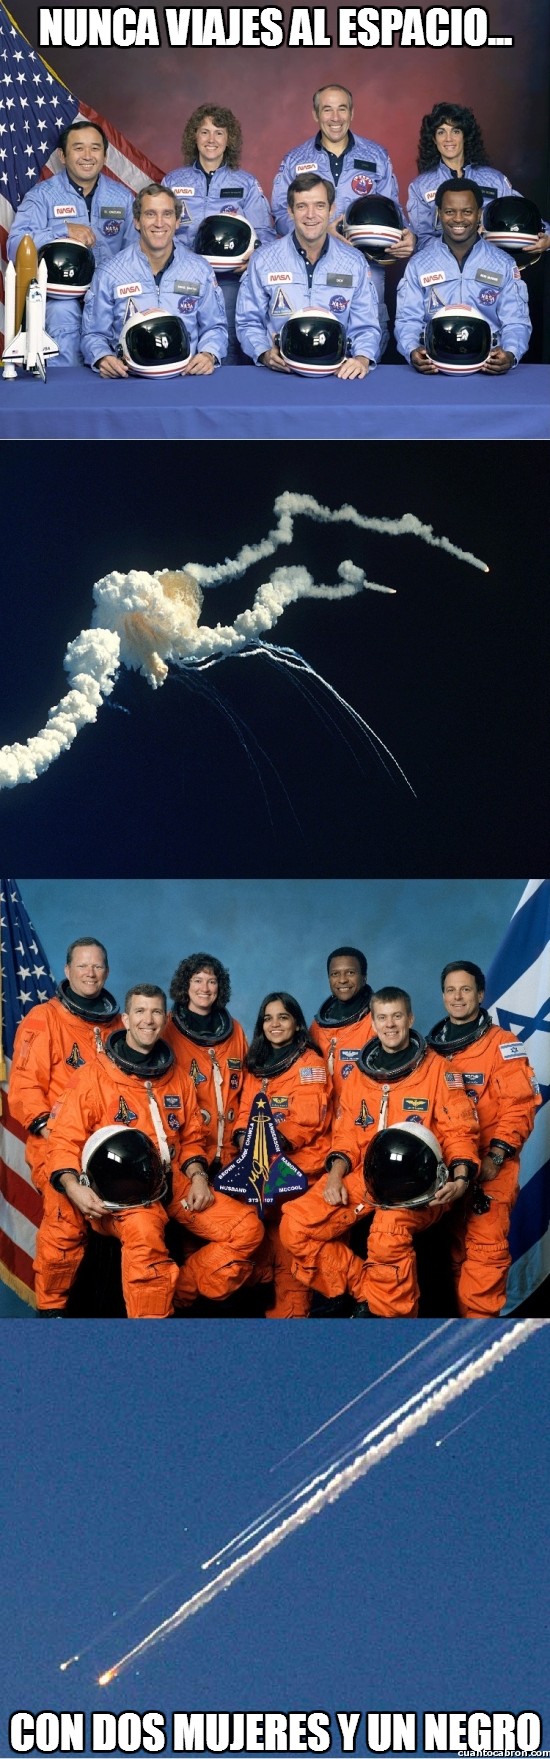 accidente,astronautas,challenger,columbia,espacio,mujeres,nasa,negro,S18,viajar